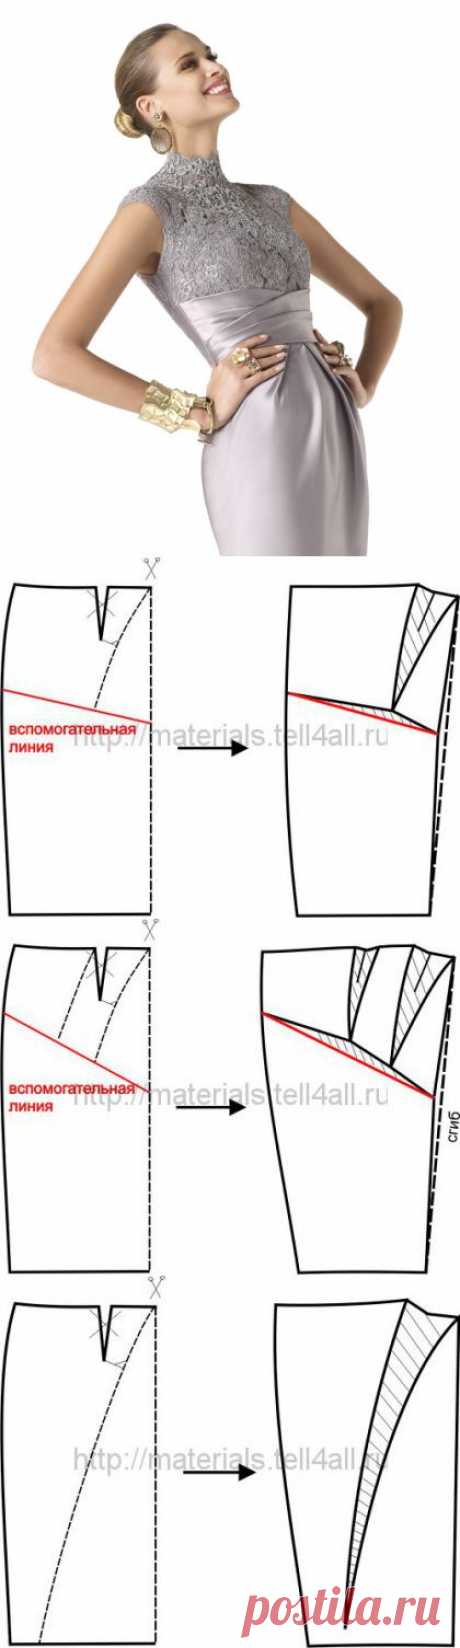 Моделирование нижней части платья из атласа